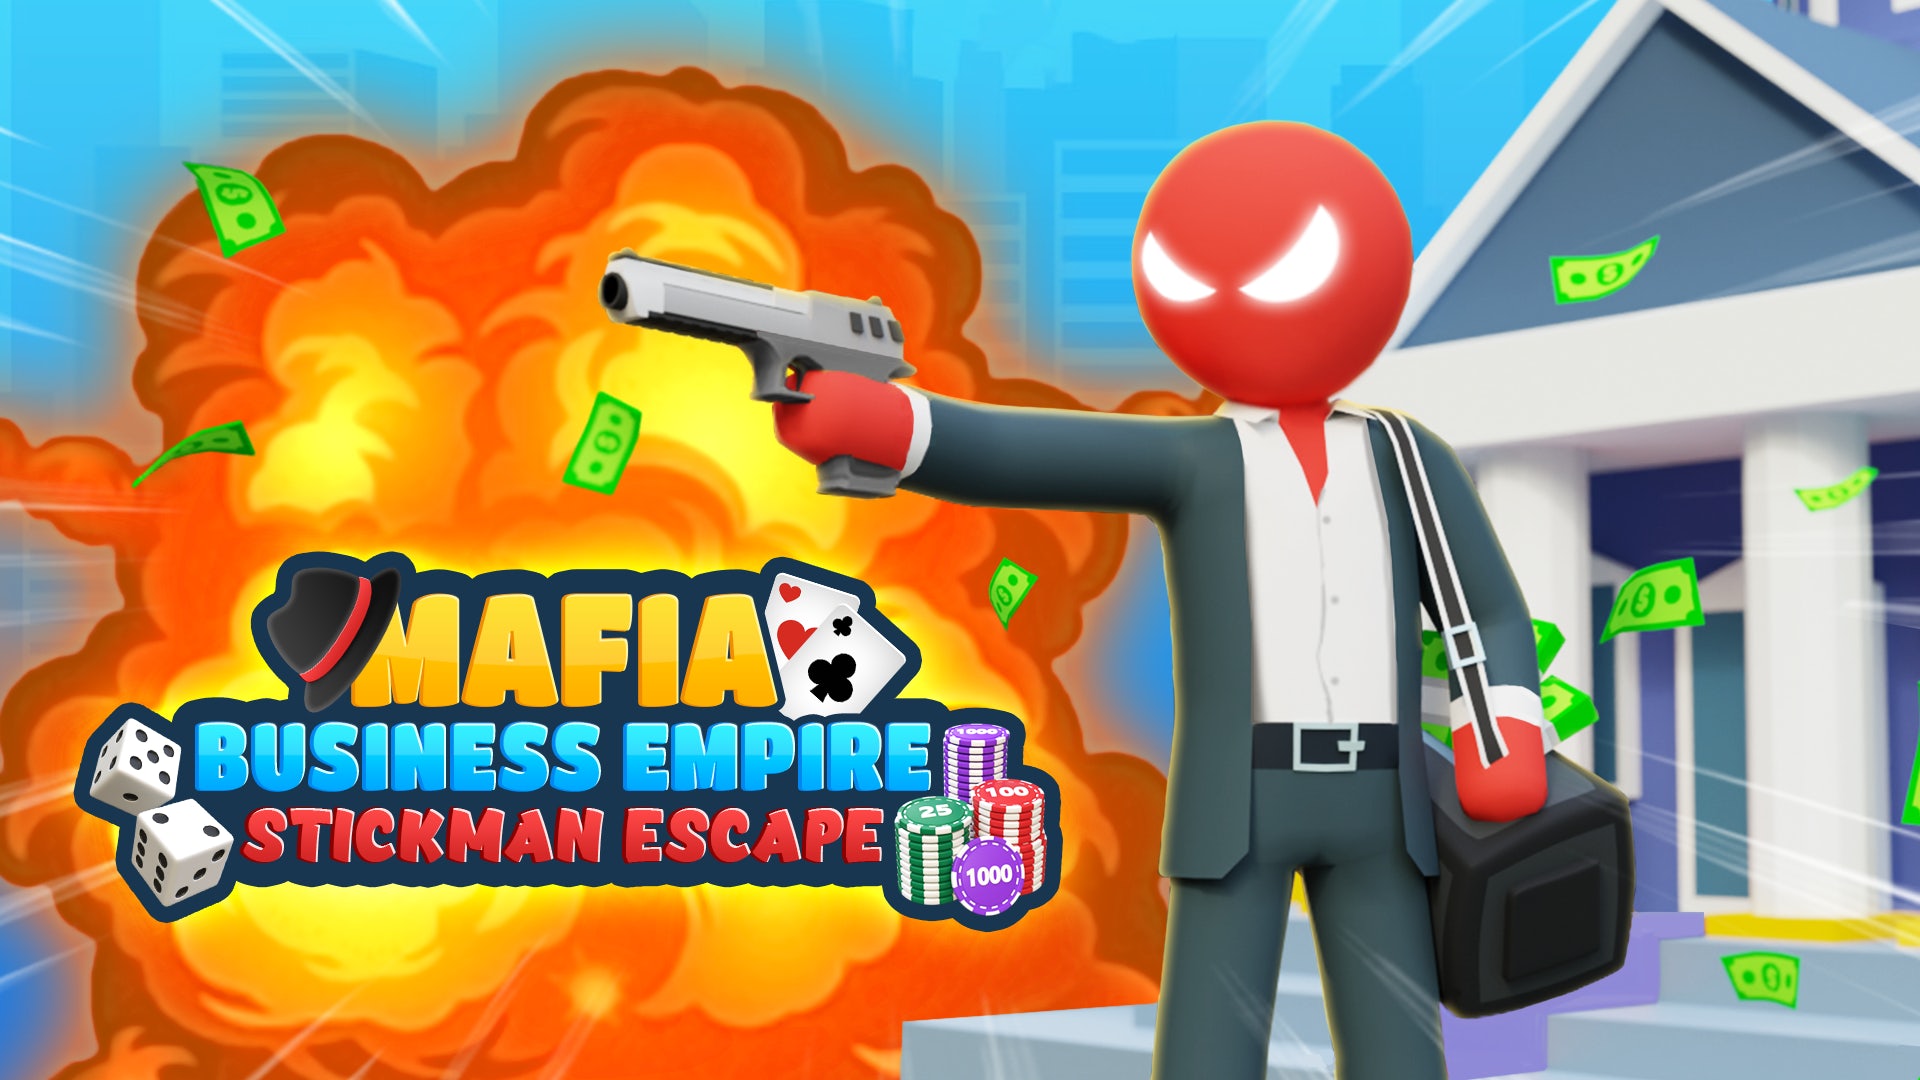 Mafia Business Empire: Stickman Escape 3D